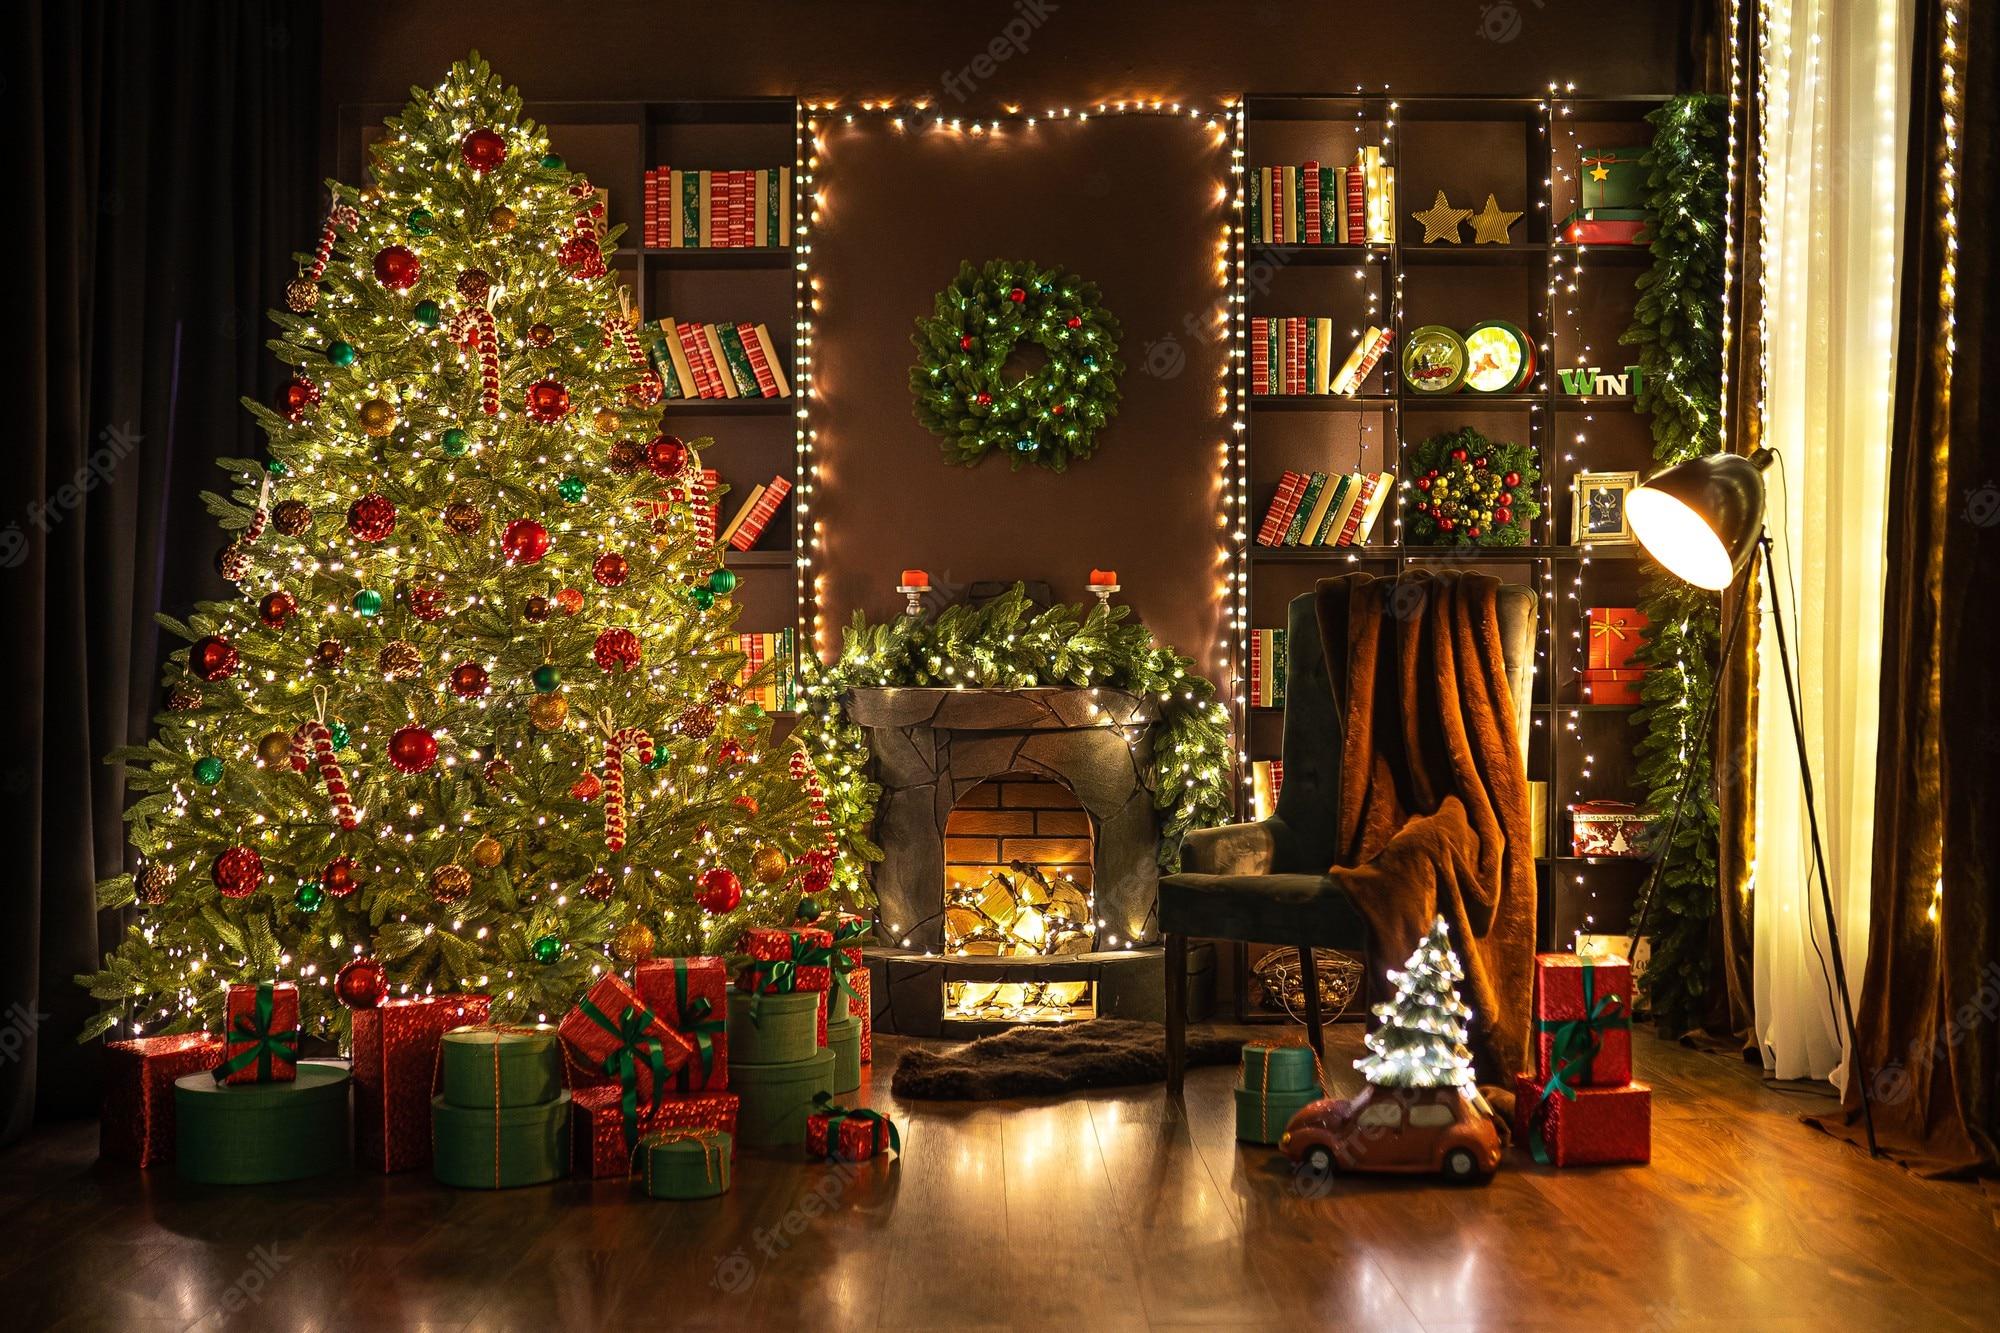 Tường phòng khách Giáng Sinh - Bạn đang tìm kiếm cách để làm cho phòng khách của mình trở nên đầy sức sống trong mùa Giáng Sinh? Hãy nhấp vào hình ảnh này để xem một tường phòng khách được trang trí đầy màu sắc và mang phong cách Giáng Sinh nhé.